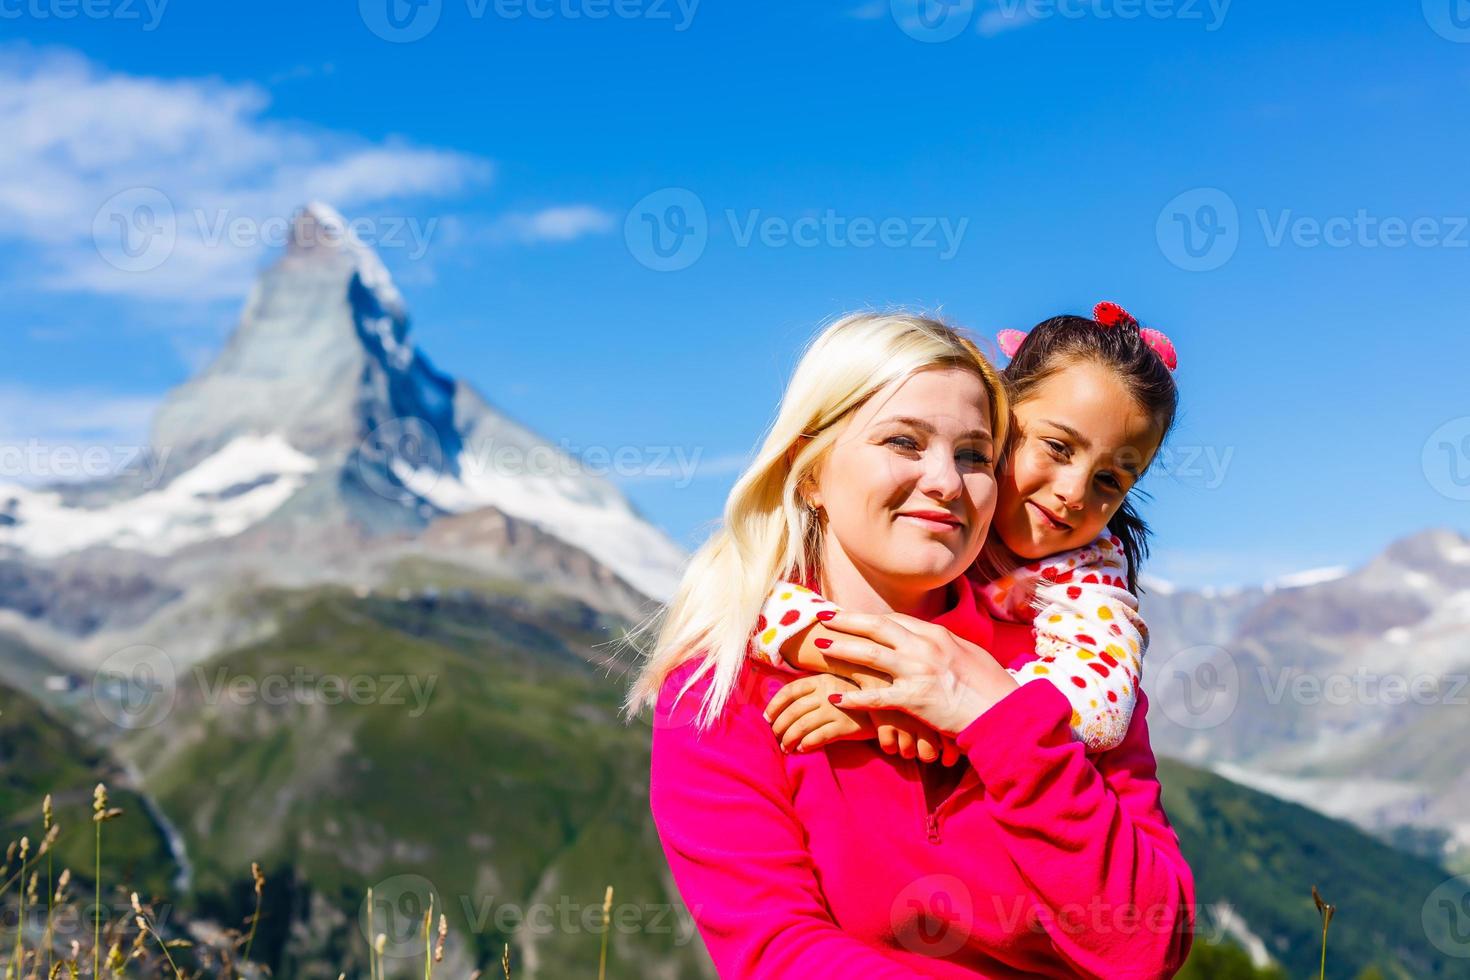 voyage en montagne. deux filles heureuses sur le fond d'un lac de montagne et de montagnes en arrière-plan photo